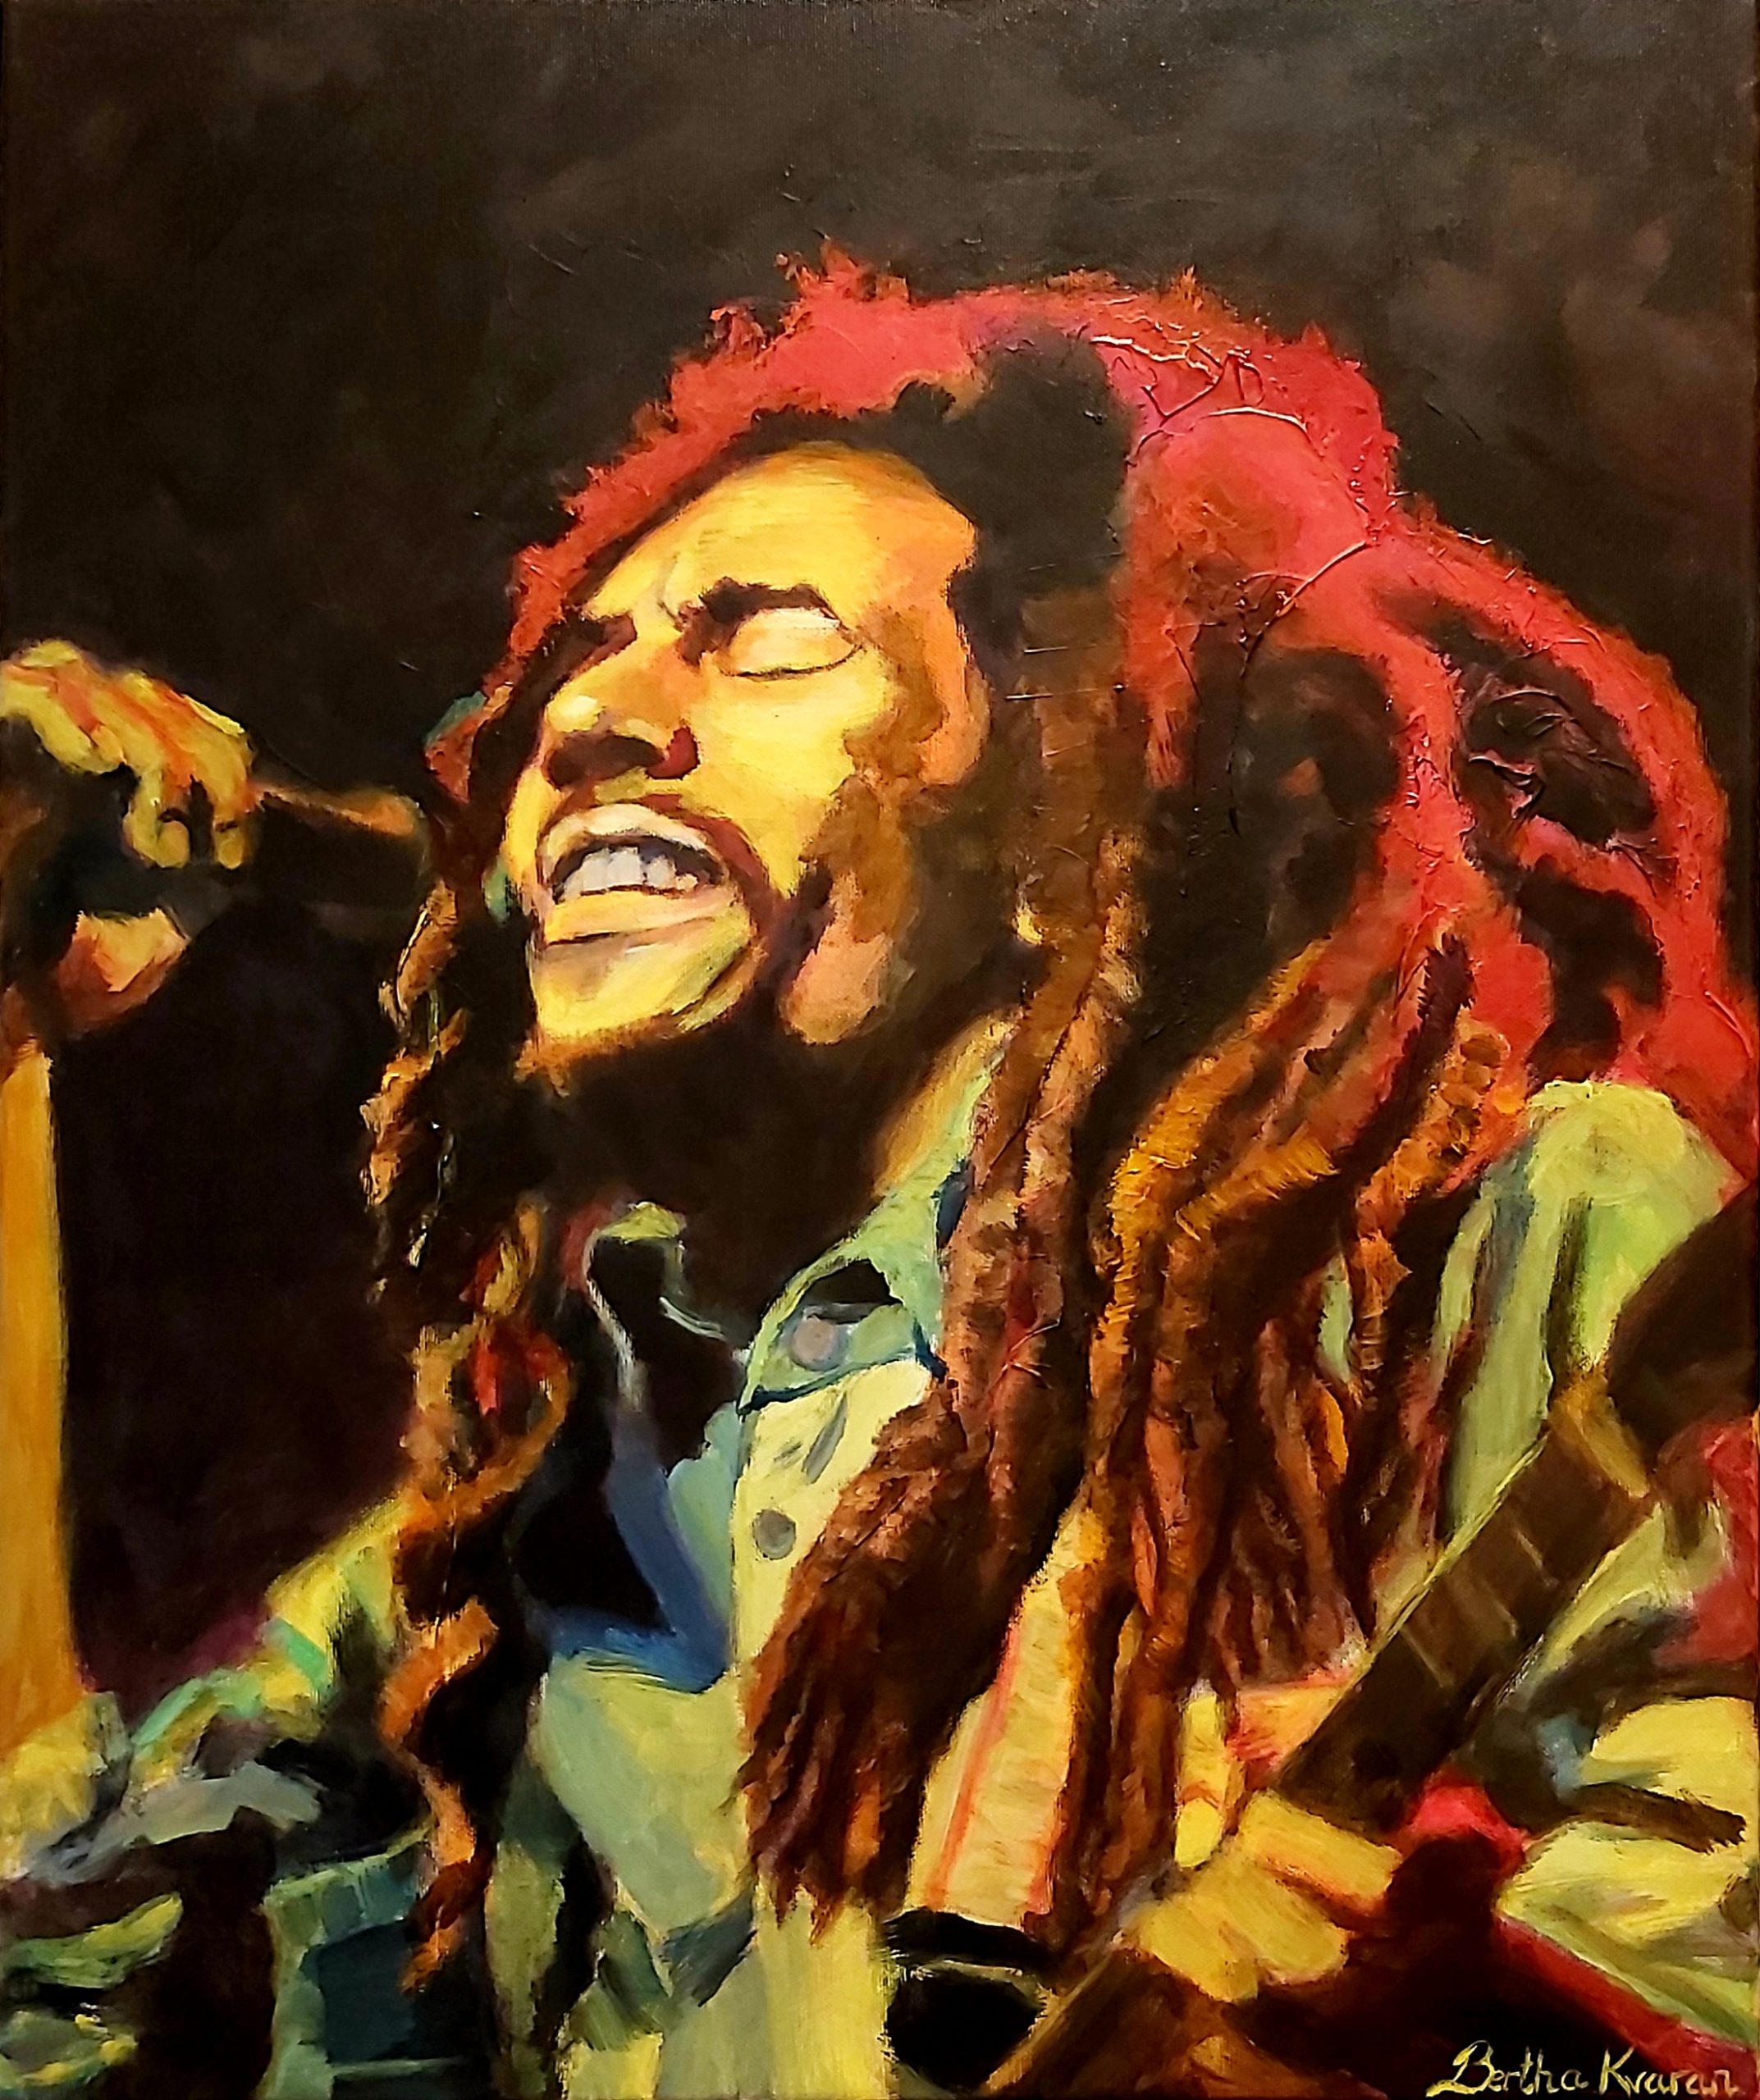 Bob Marley, an abstract expressive portrait painting by Bertha Kvaran